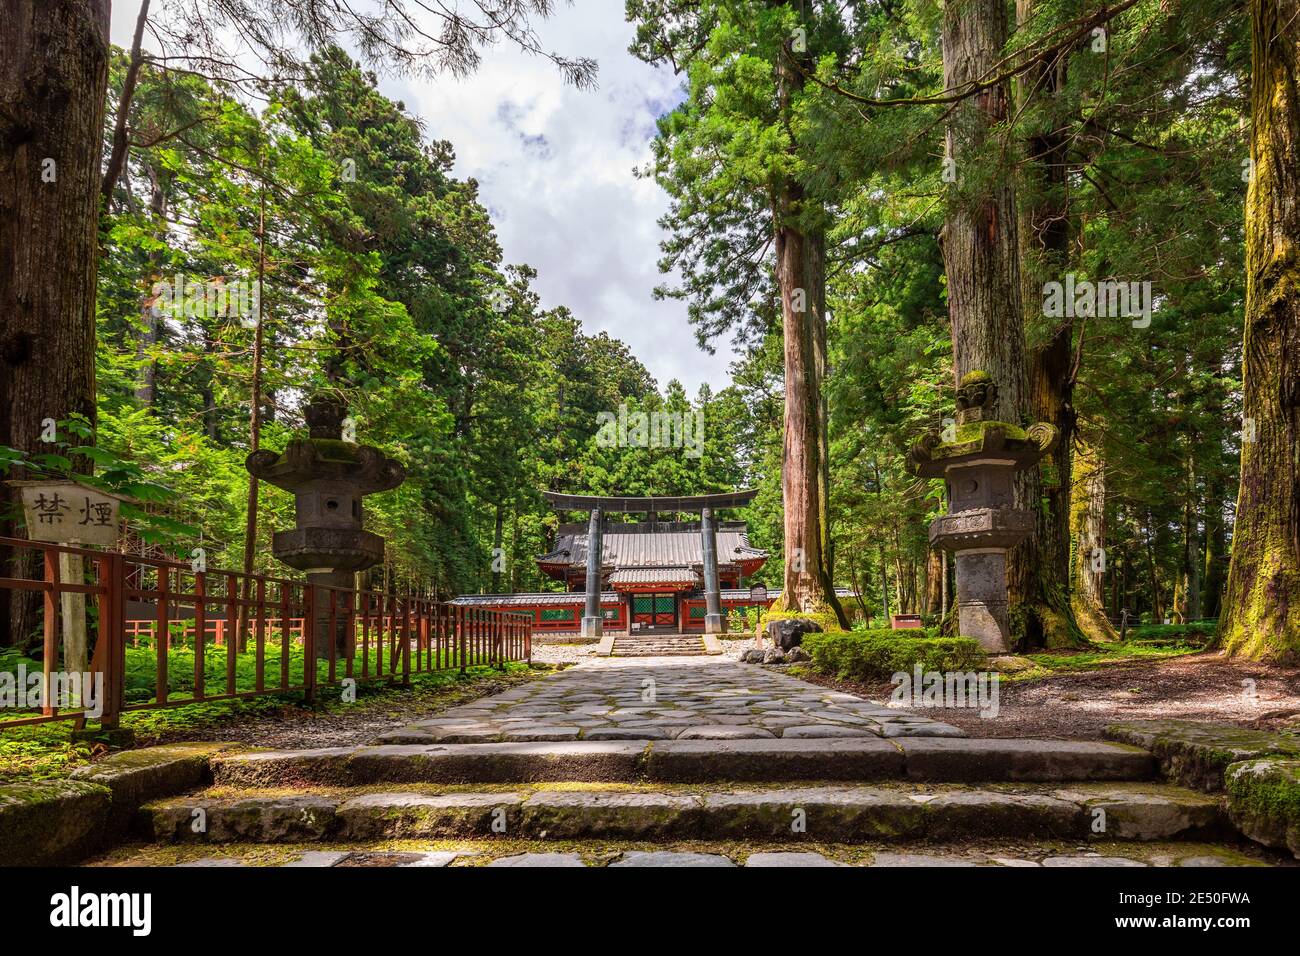 photo grand angle d'un chemin en pierre menant à un temple de pagode rouge entouré d'arbres, avec une grande porte en bronze de torii devant lui Banque D'Images